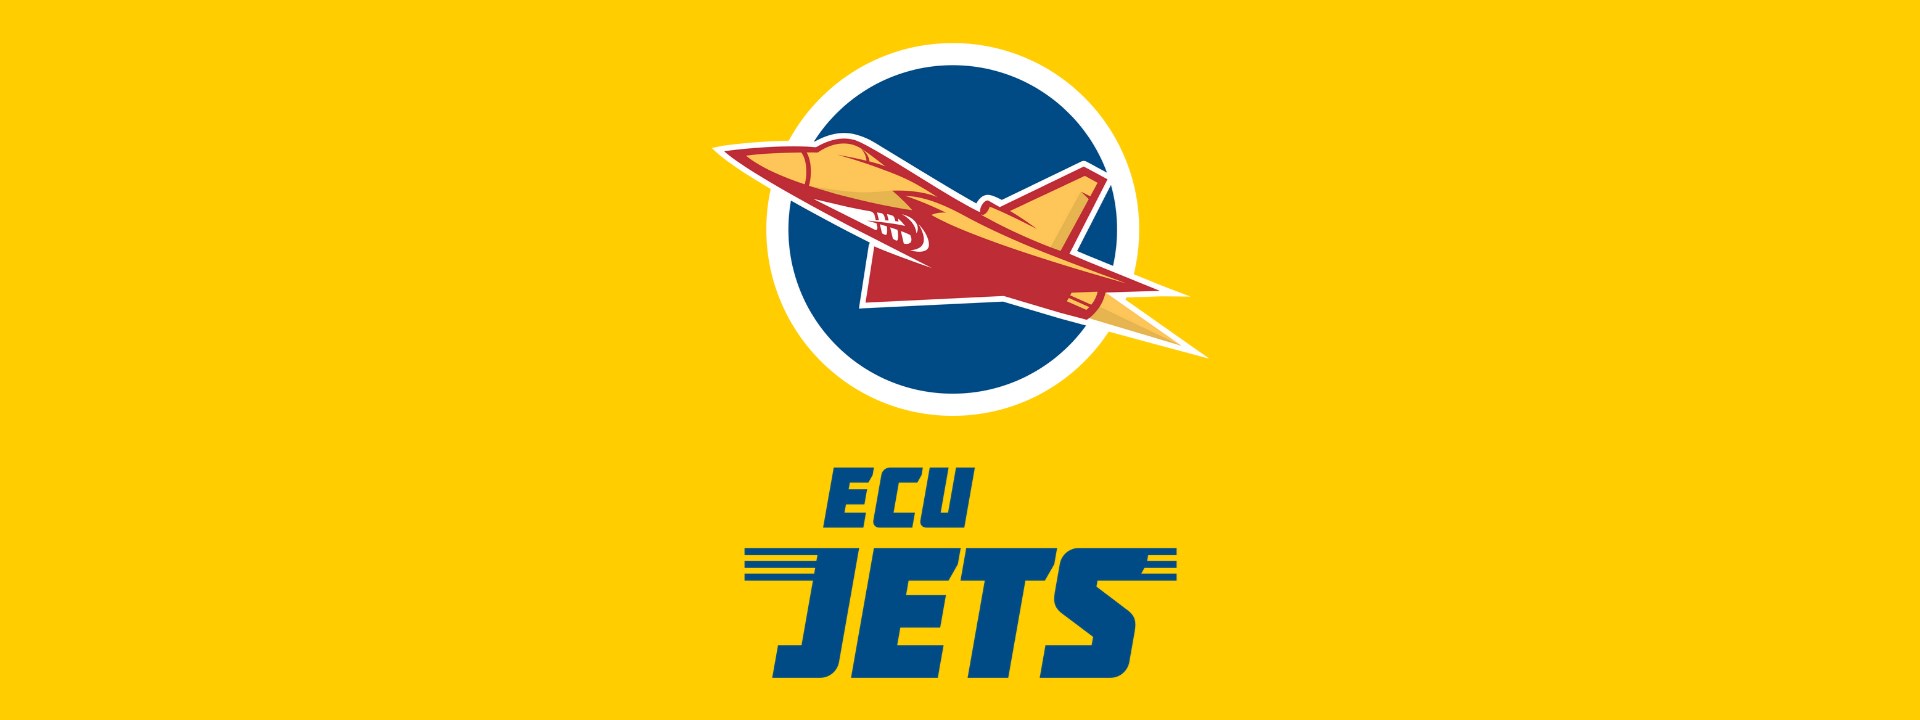 ECU Jets Announcement